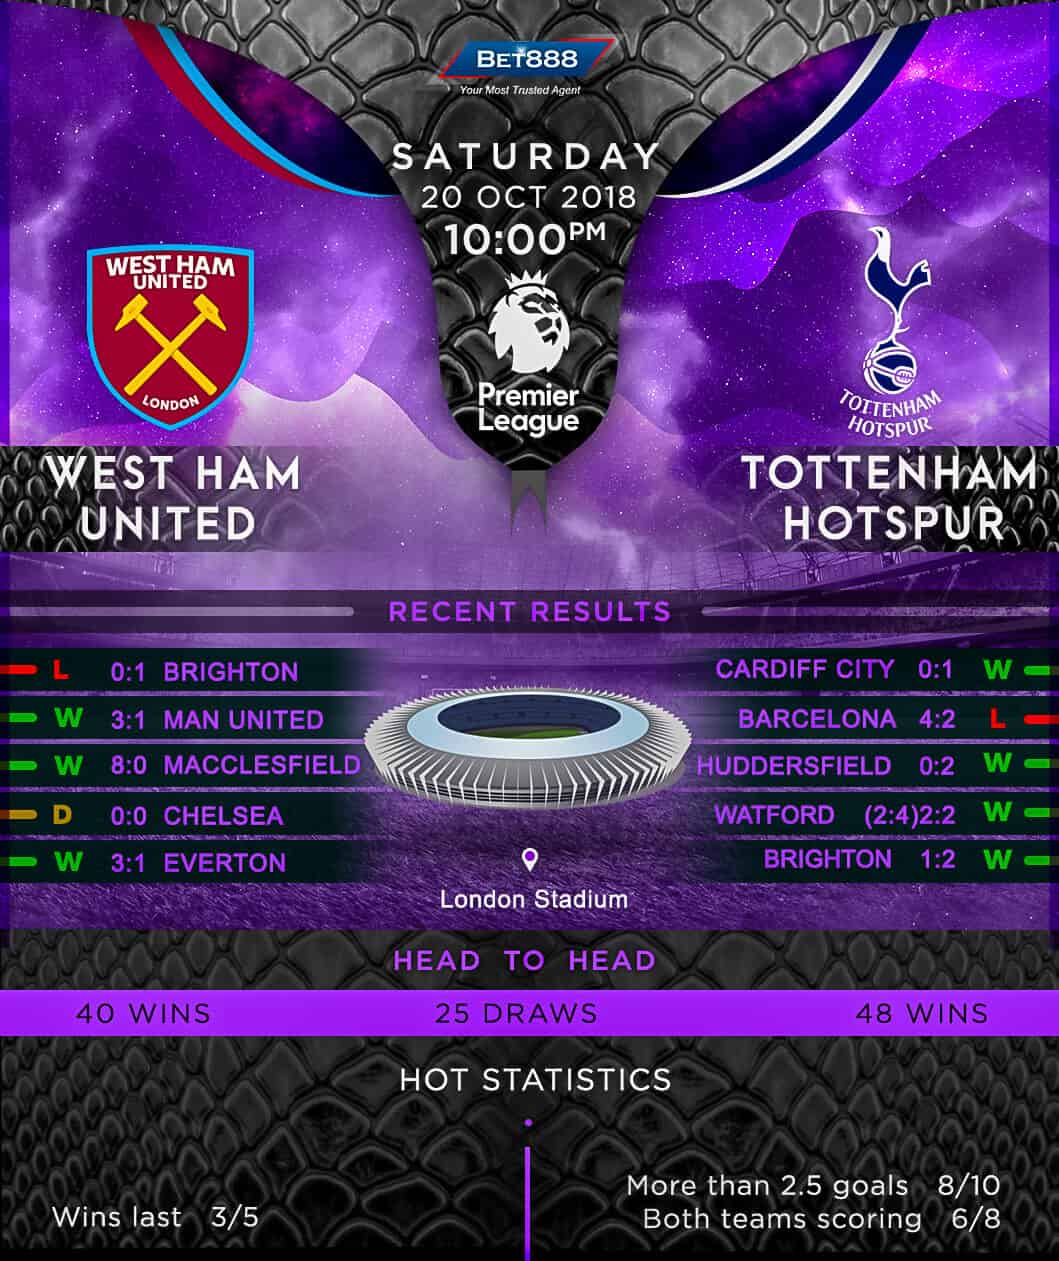 West Ham United vs Tottenham Hotspur 20/10/18